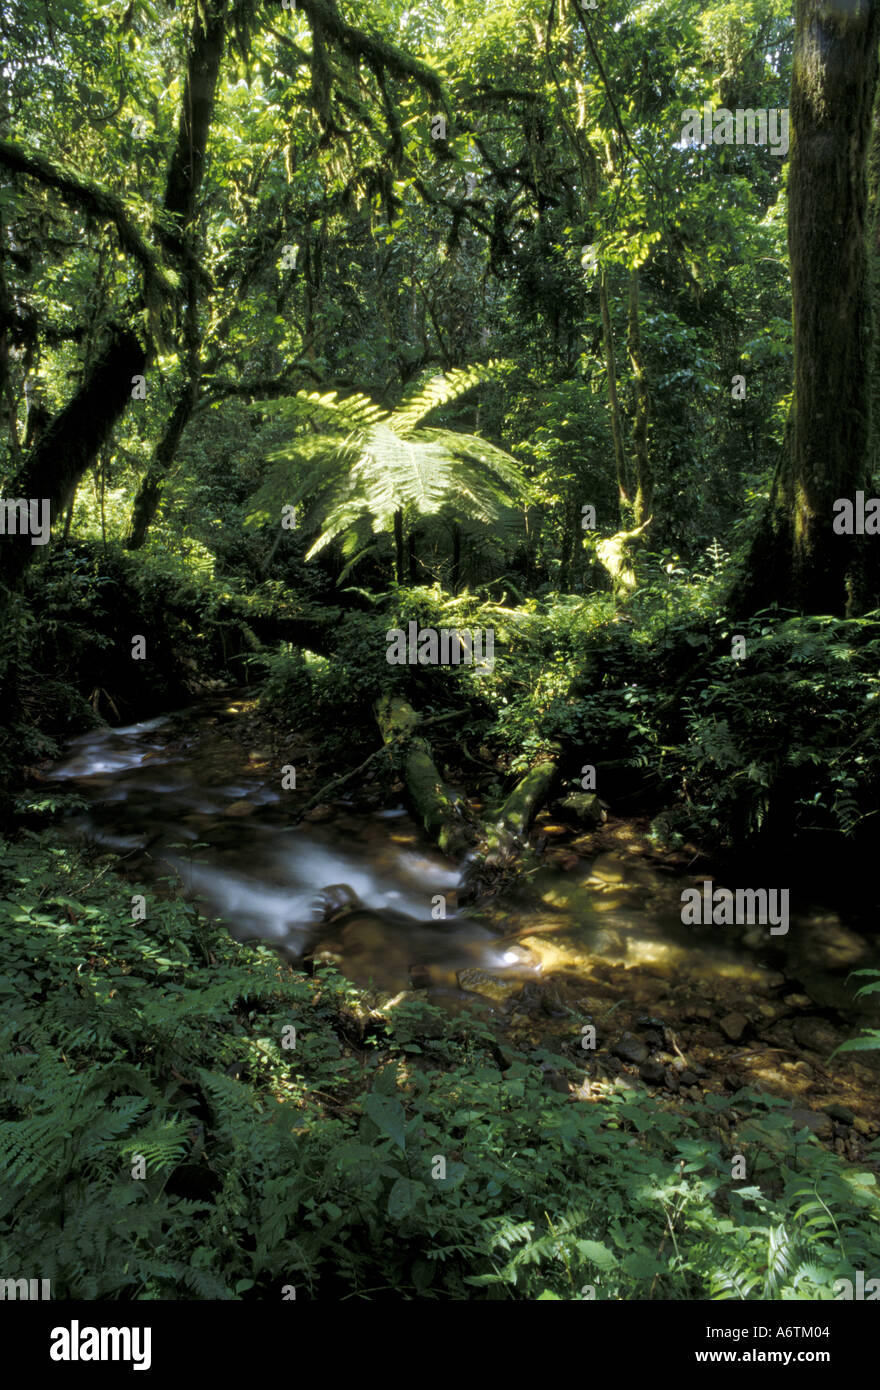 Africa, Uganda, Bwindi Impenetrable National Park. Rainforest tree fern and stream Stock Photo